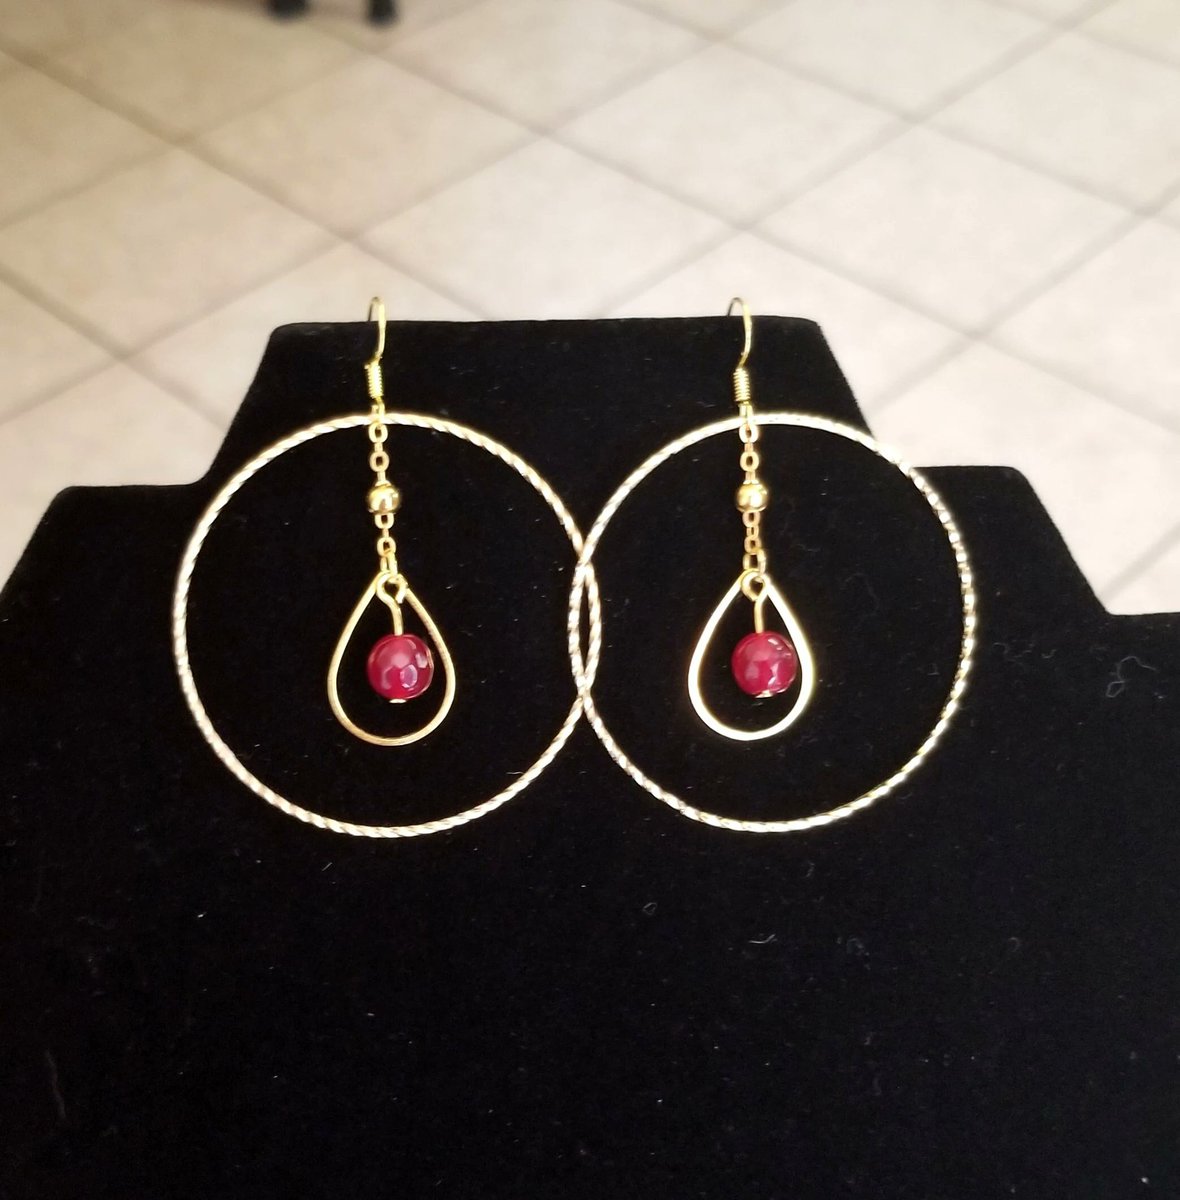 14k Gold Ruby Jade Earrings, Gold Hoop Earrings, Red Jade #goldearrings #hoopearrings #goldhoopearrings #rubyjade #jade #jadejewelry #handmadejewelry #giftsforher #motherofthebride #wedding #prom #fashion #style #Ety 

etsy.me/3UWoYDs via @Etsy